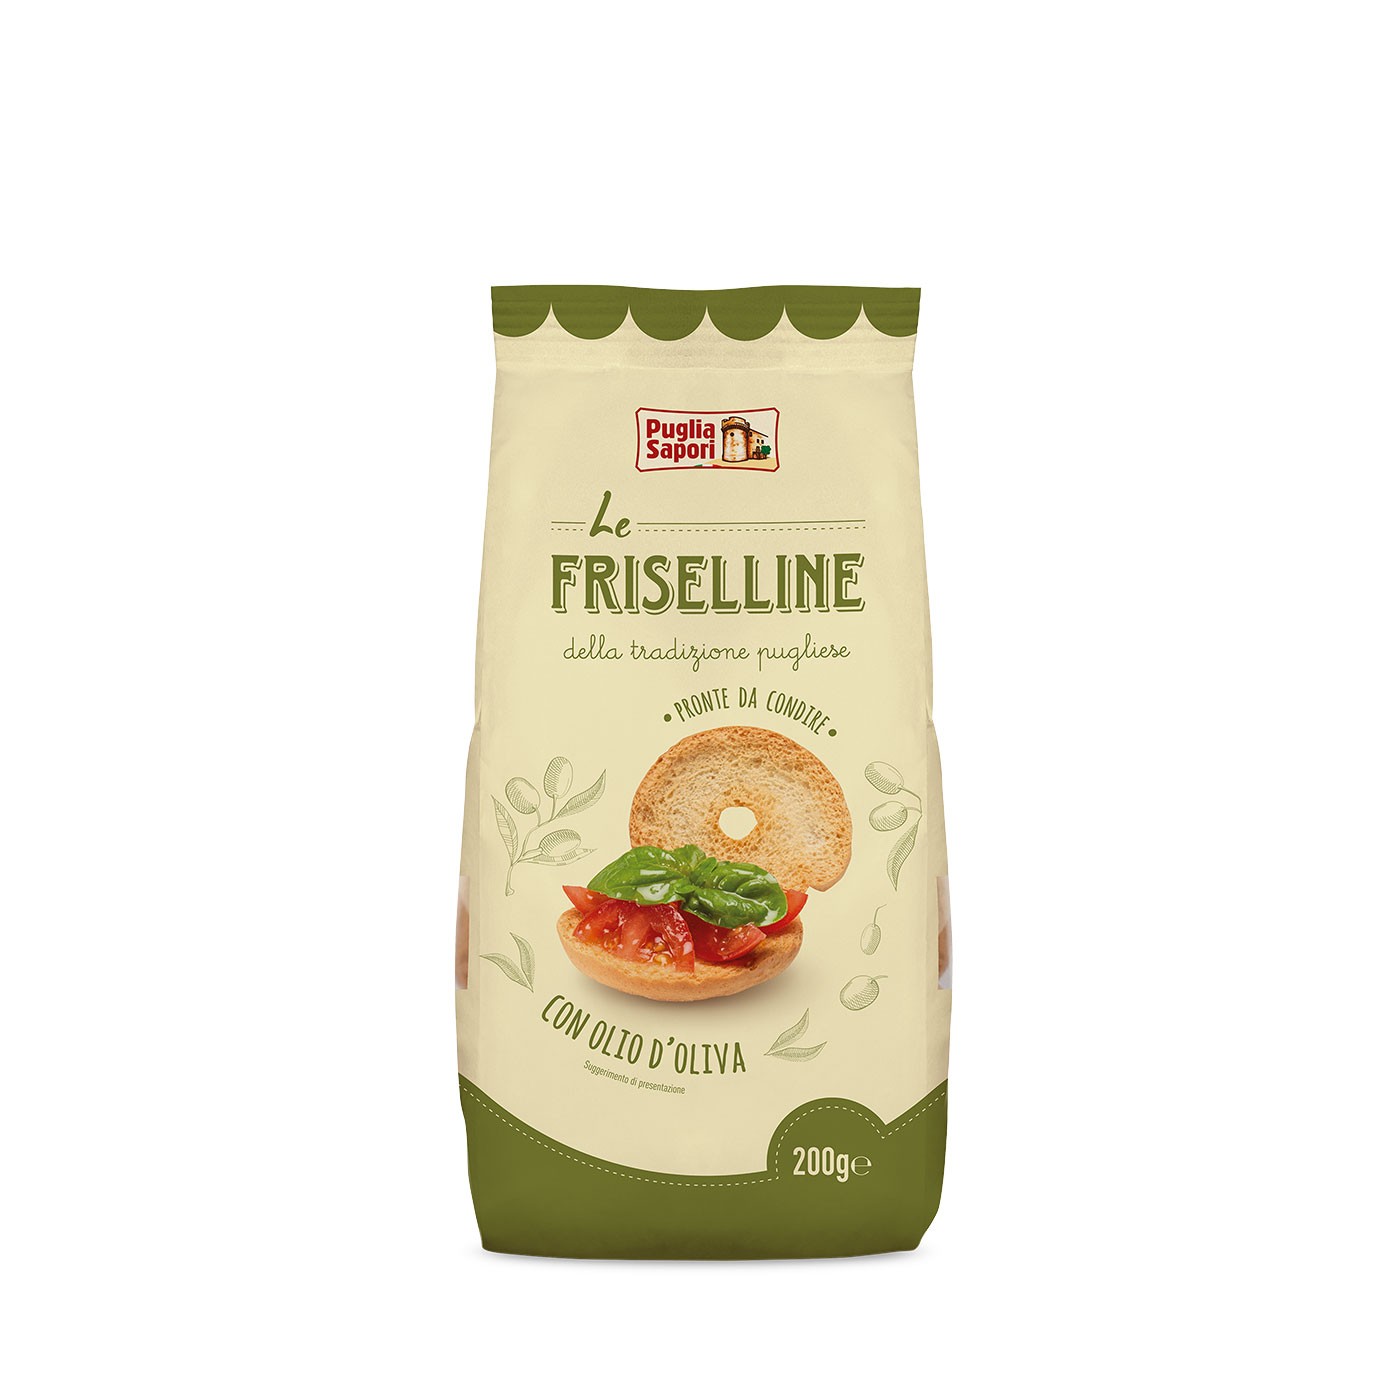 Le Friselline Crackers 7 oz